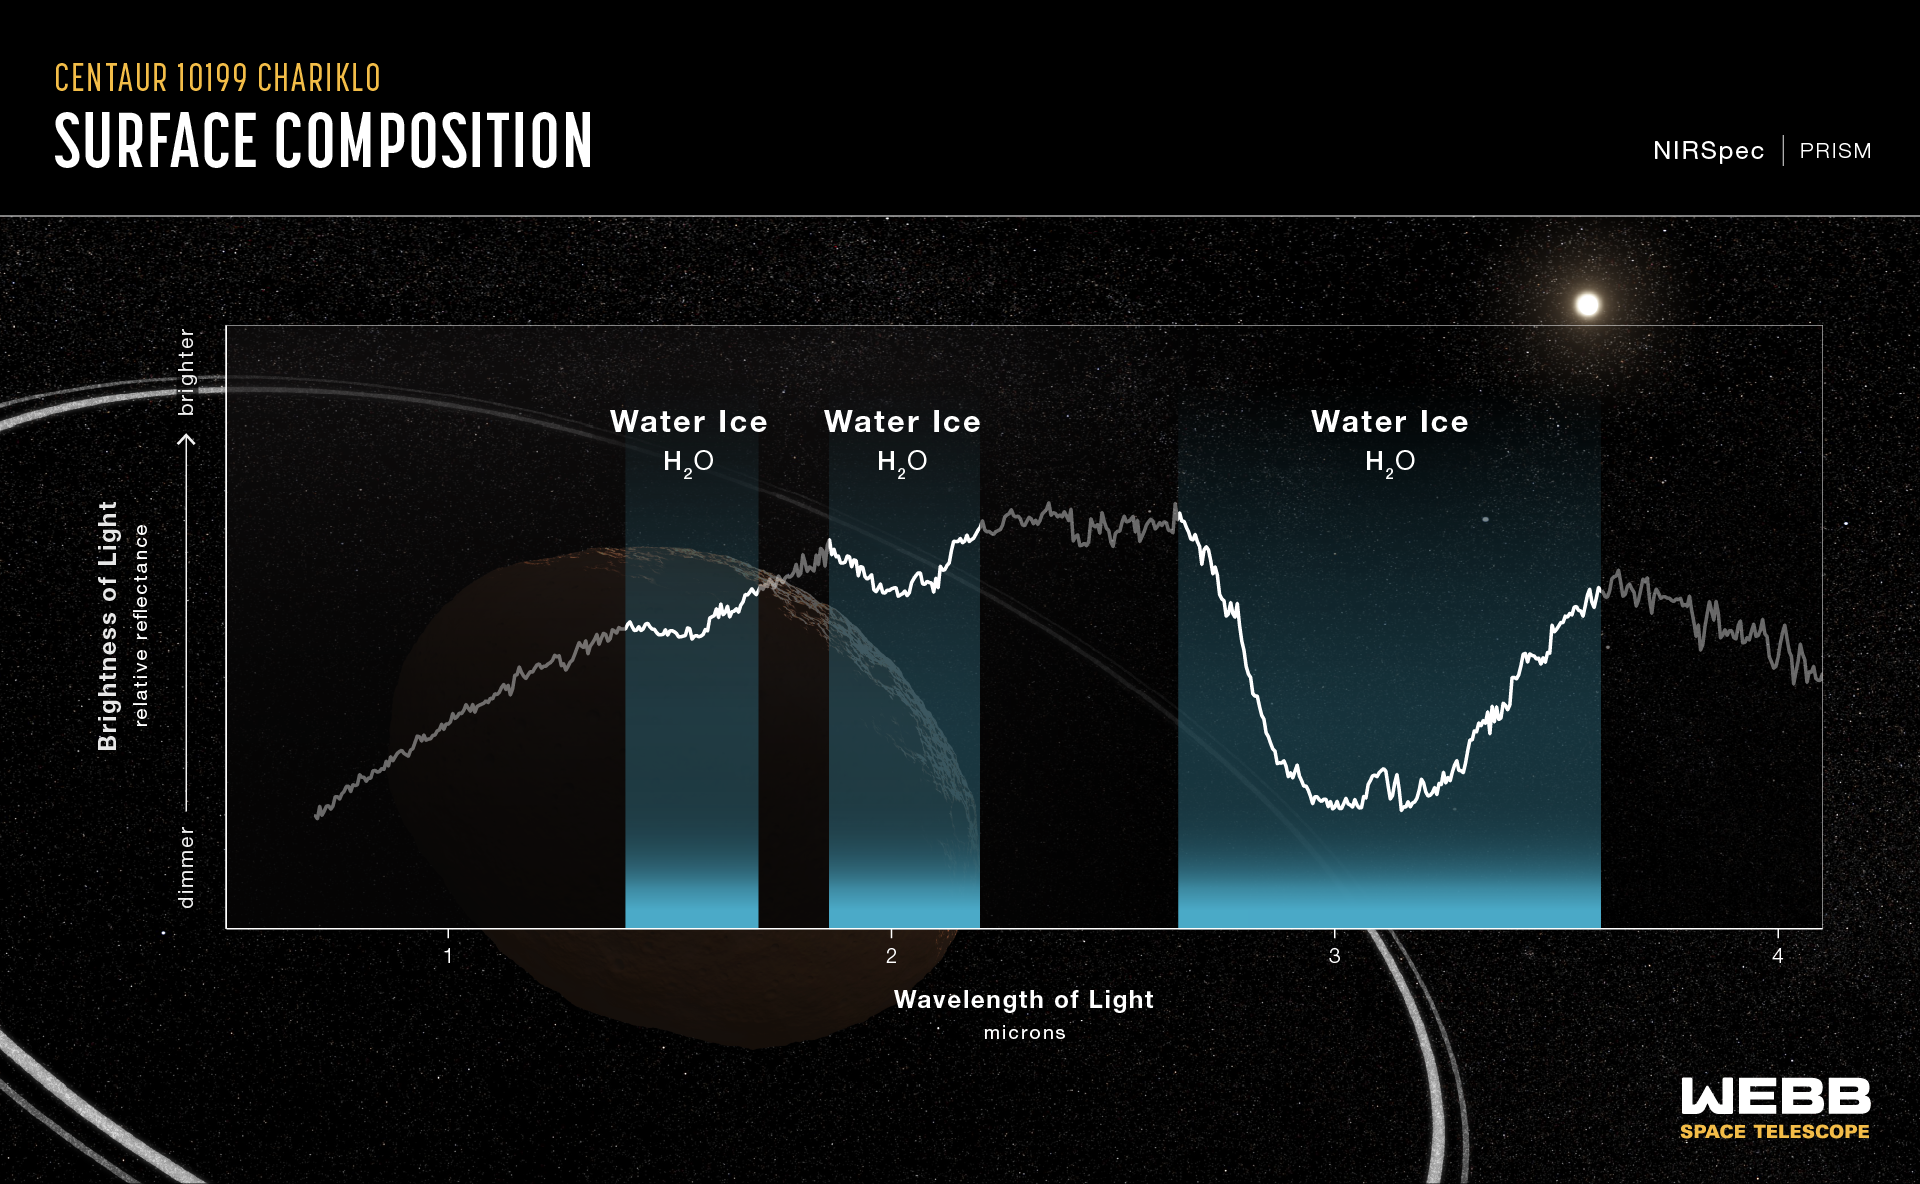 Espectro de reflectancia de Centaur 10199 Chariklo Double Ring, capturado por el espectrómetro Webb de infrarrojo cercano (NIRSpec) el 31 de octubre de 2022. Este espectro muestra una clara evidencia de hielo de agua cristalizado en la superficie de Chariklo.